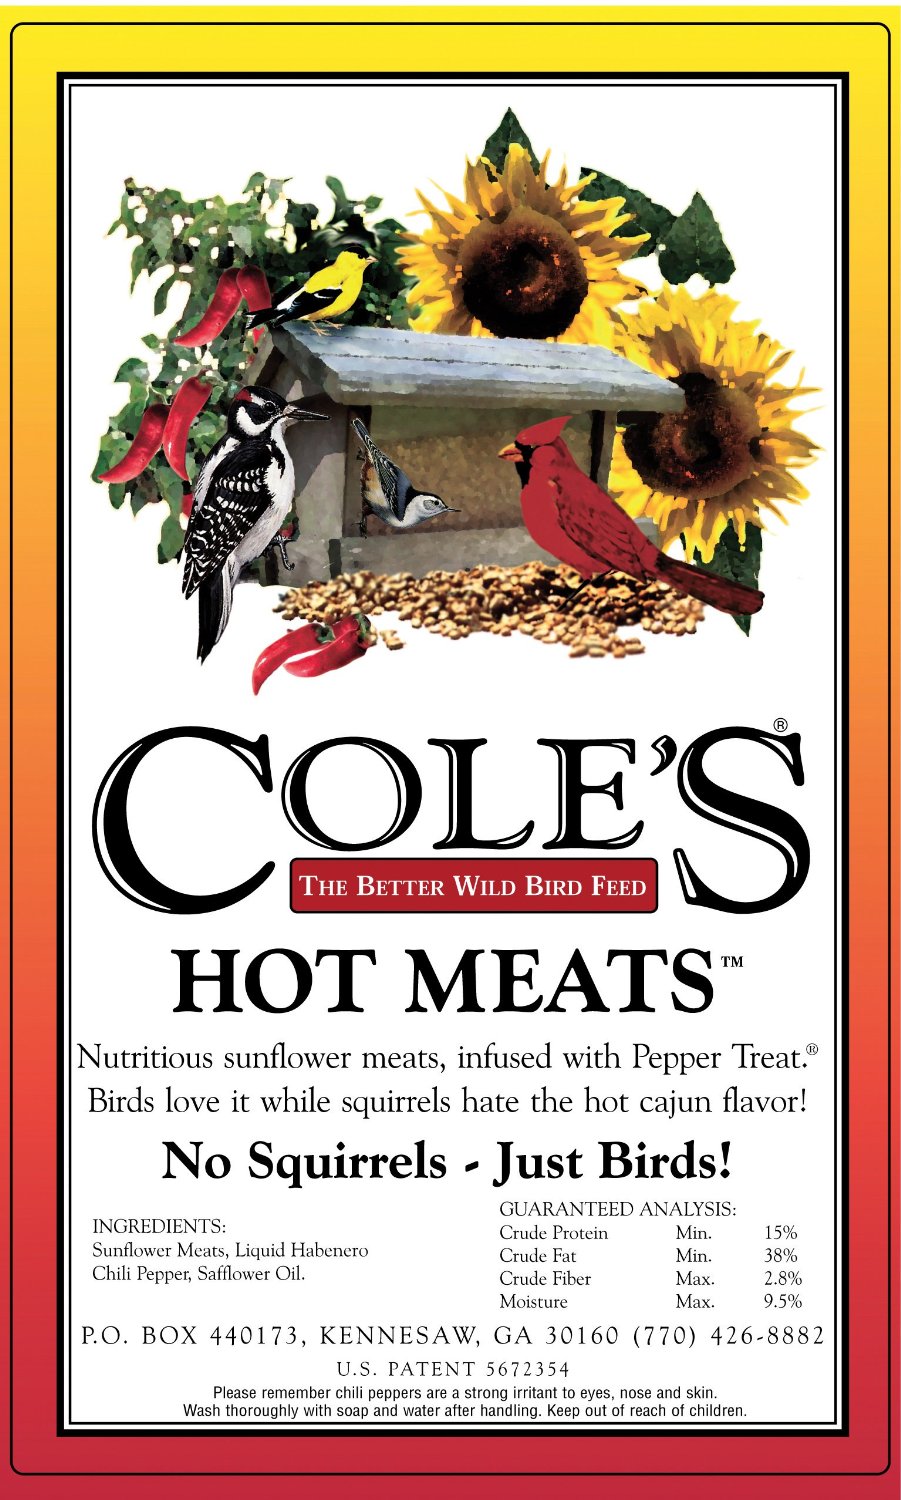 Cole's HM10 Hot Meats Wild Bird Food, 10 Lb